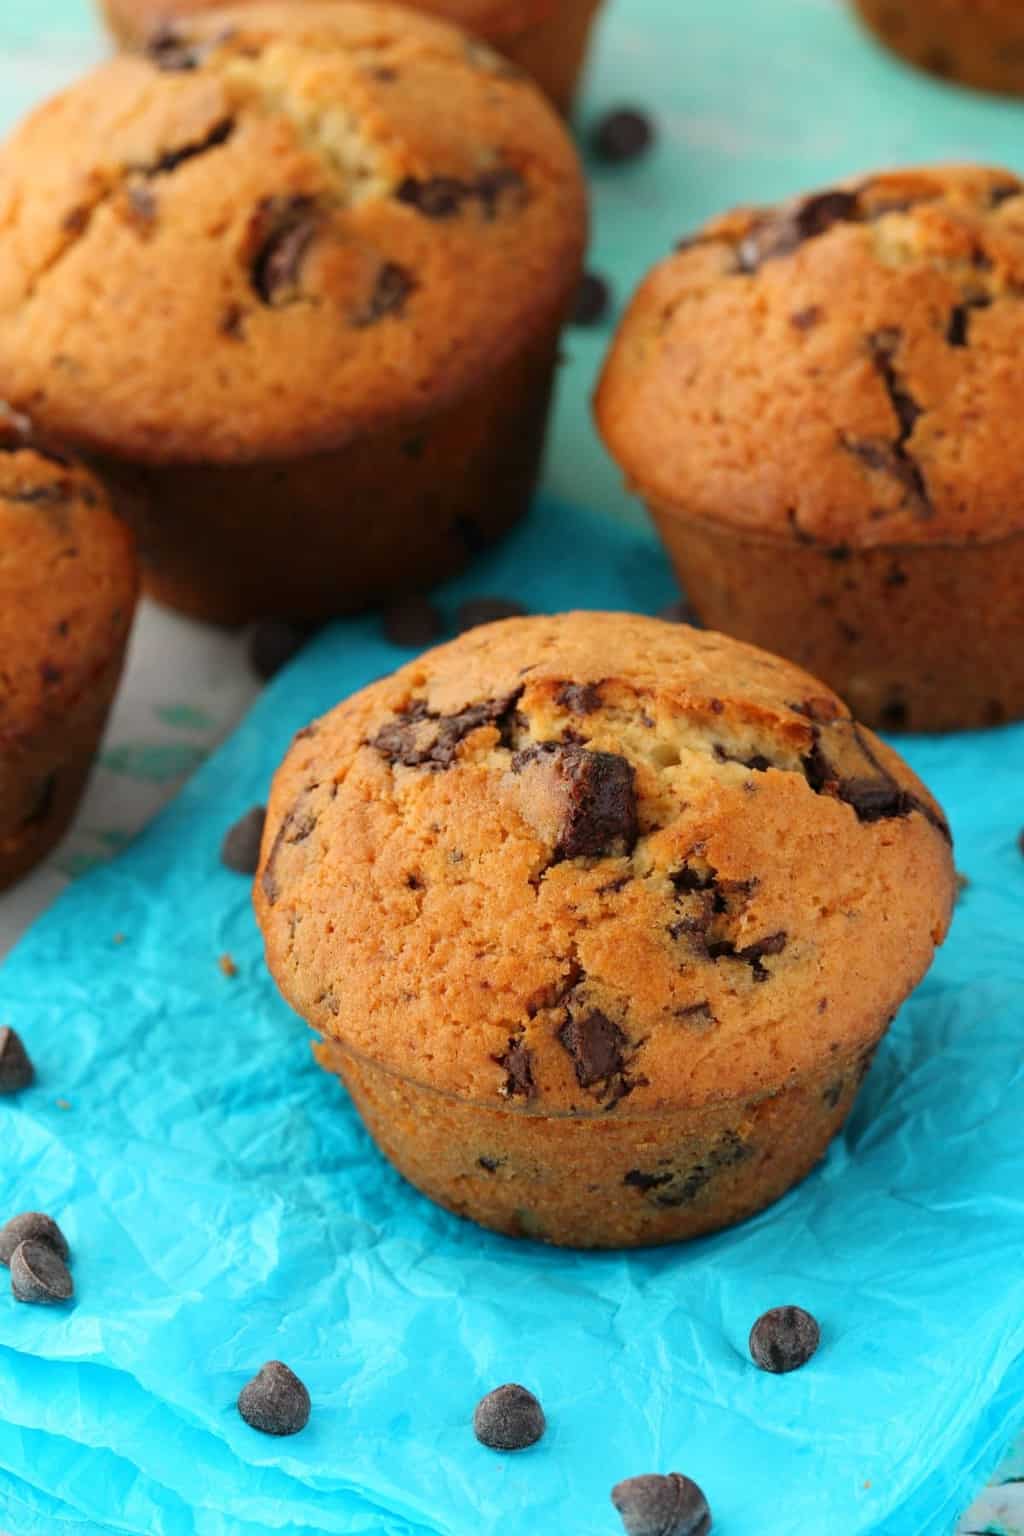 Wegańskie czekoladowe muffinki na niebieskim papierze otoczone kawałkami czekolady. 